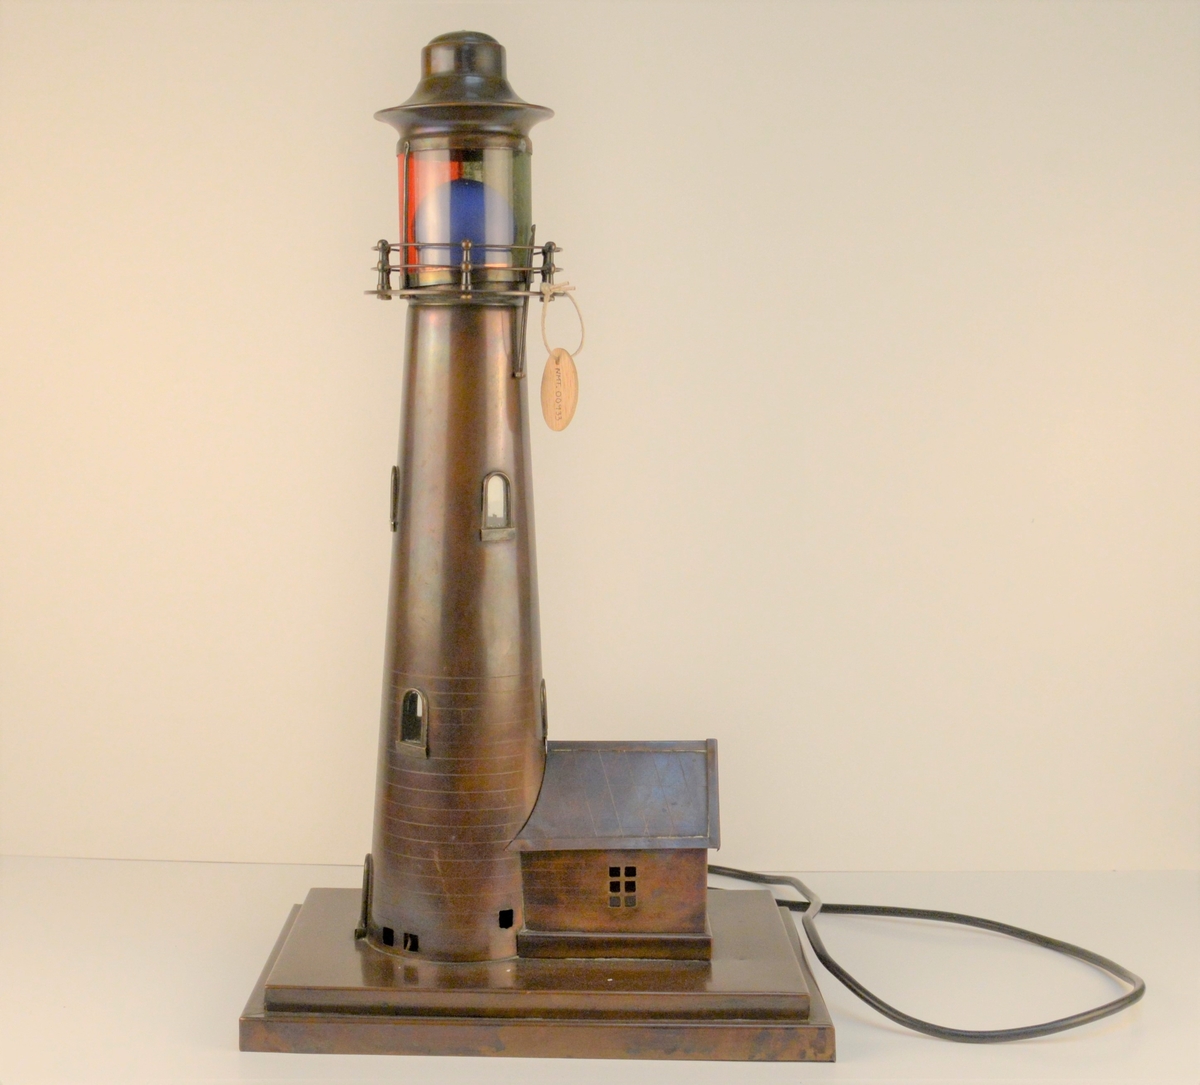 Modell av eit fyrtårn med blå lyspære i toppen og elektrisk ledning.